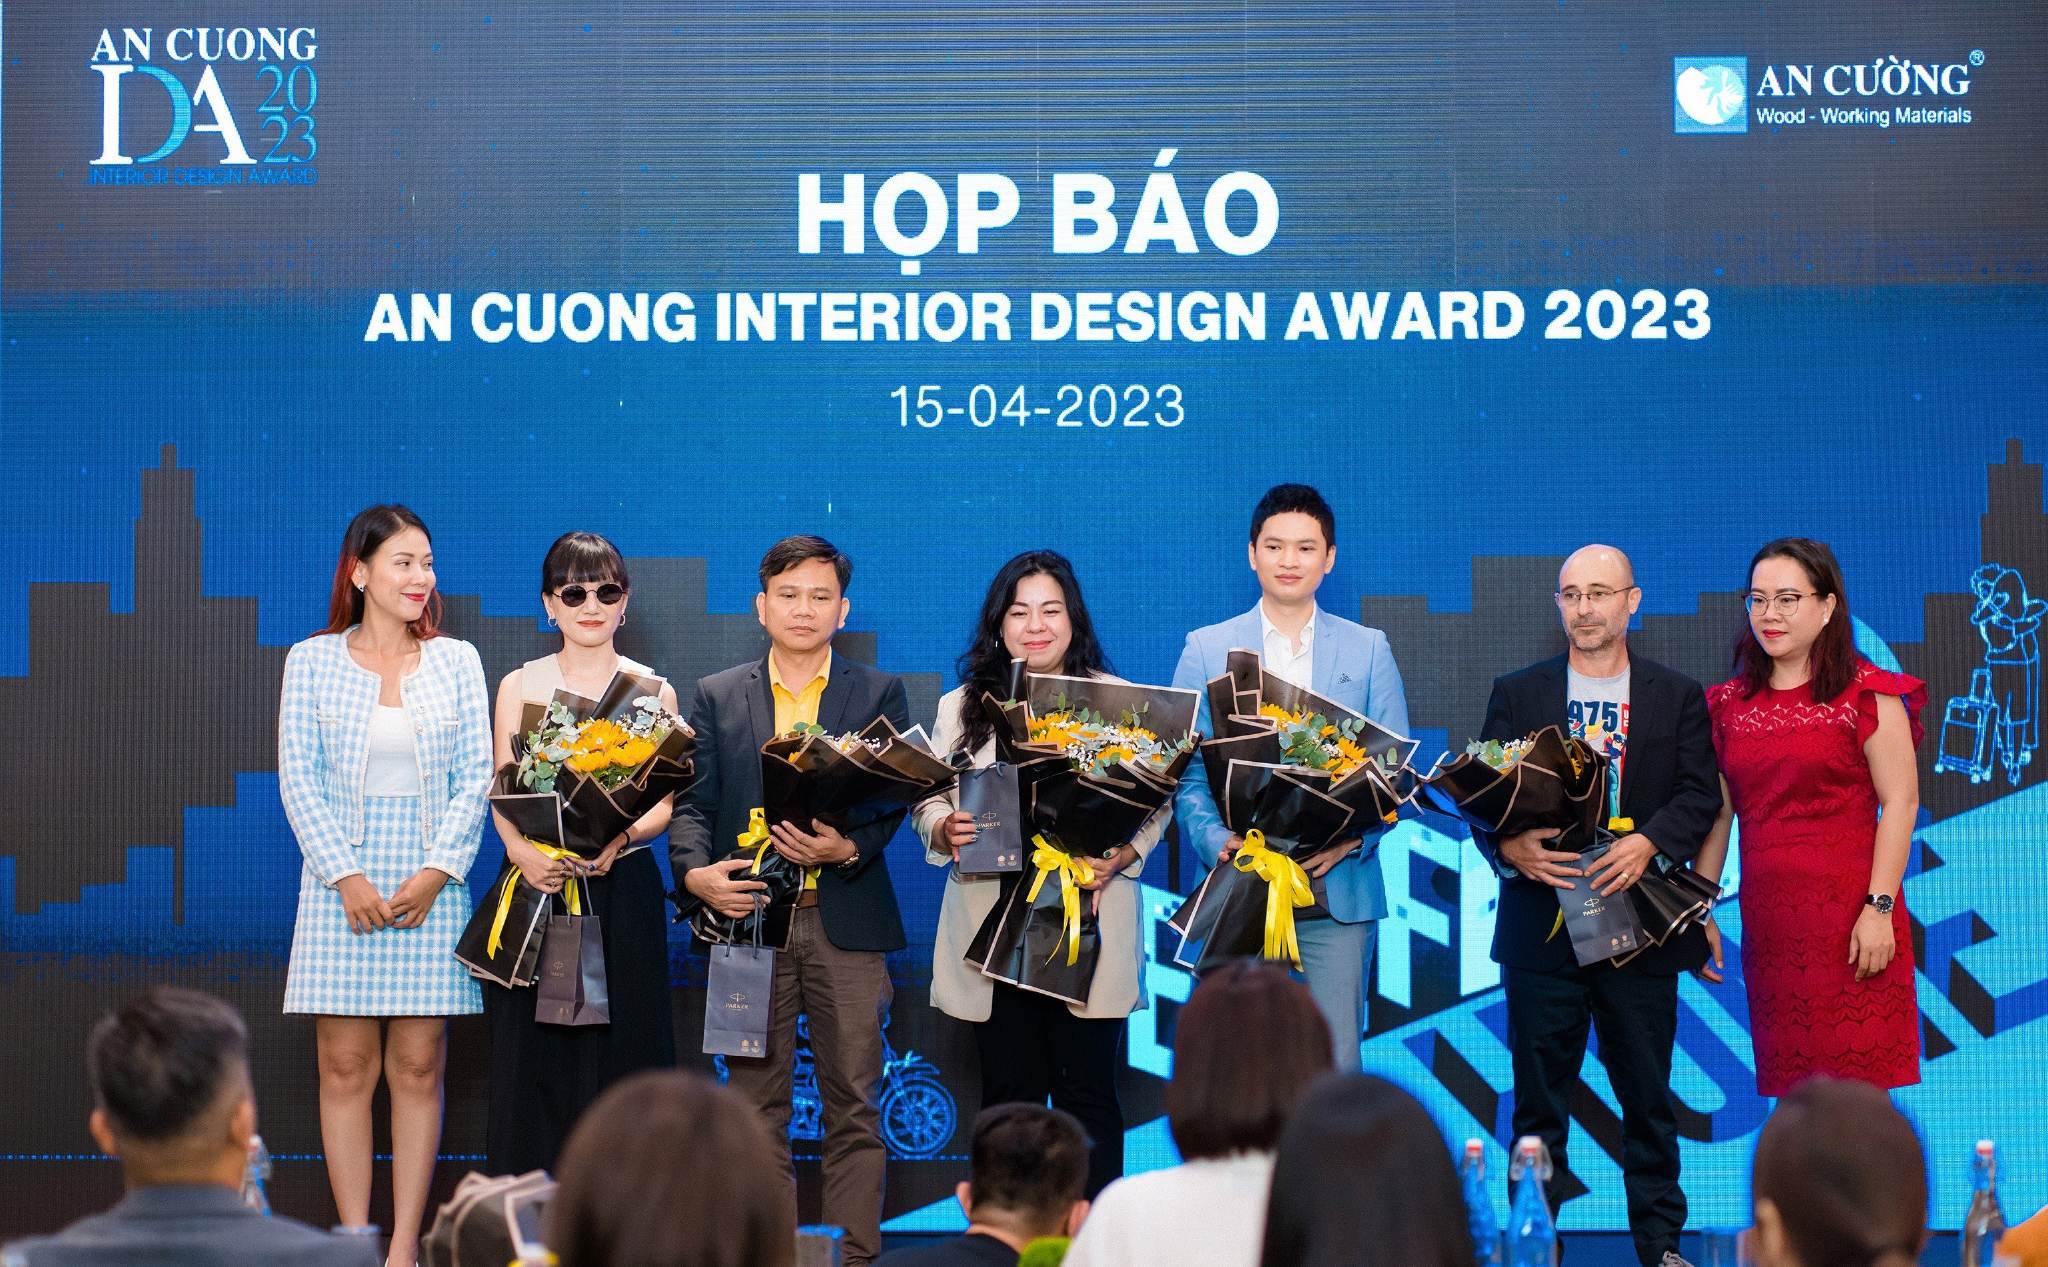 [QC] An Cuong Interior Design Award 2023 với chủ đề “Redefining Home” chính thức khởi động